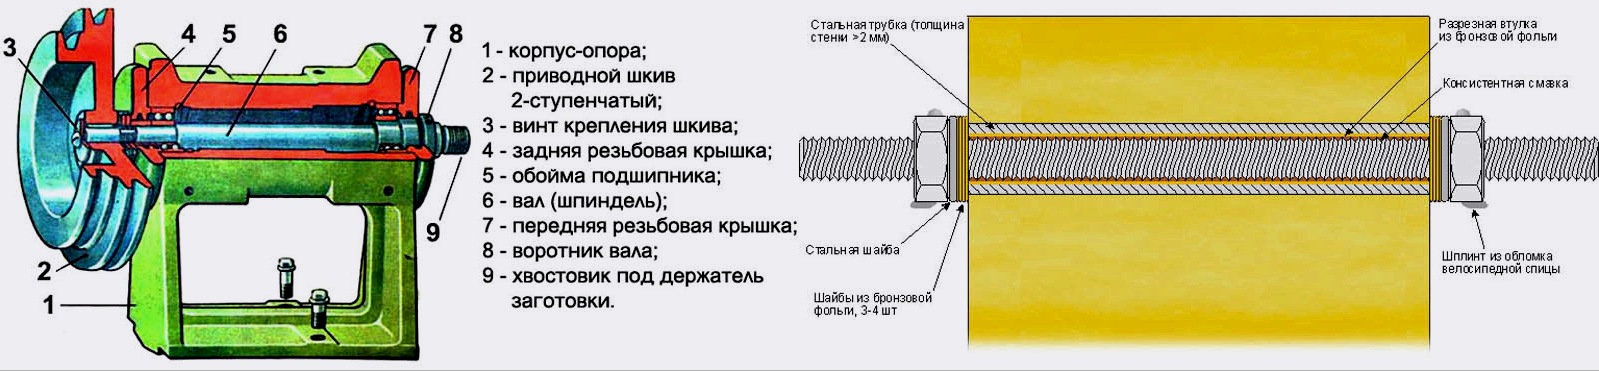 Fa eszterga: eszköz, szerkezeti egységek, házi készítés